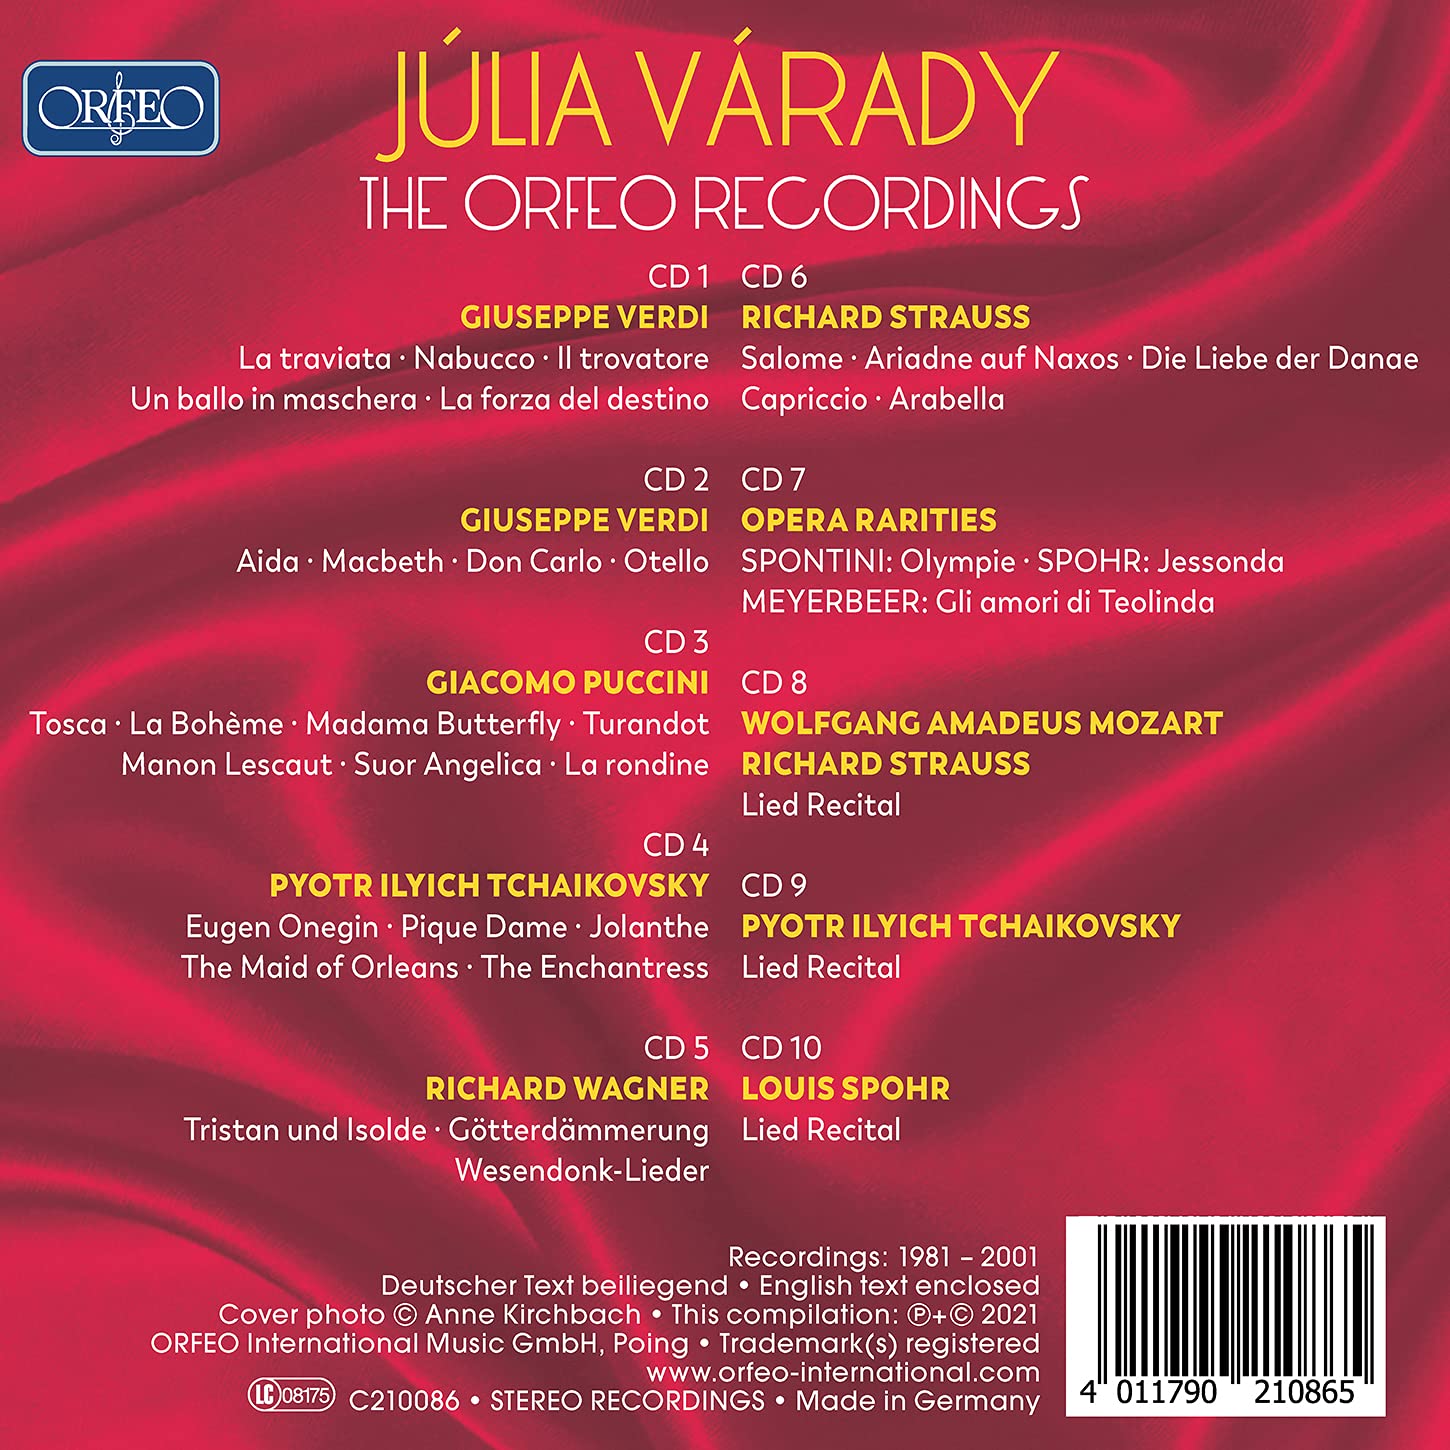 Julia Varady 율리아 바라디 - ORFEO 레코딩 (The Orfeo Recordings) 